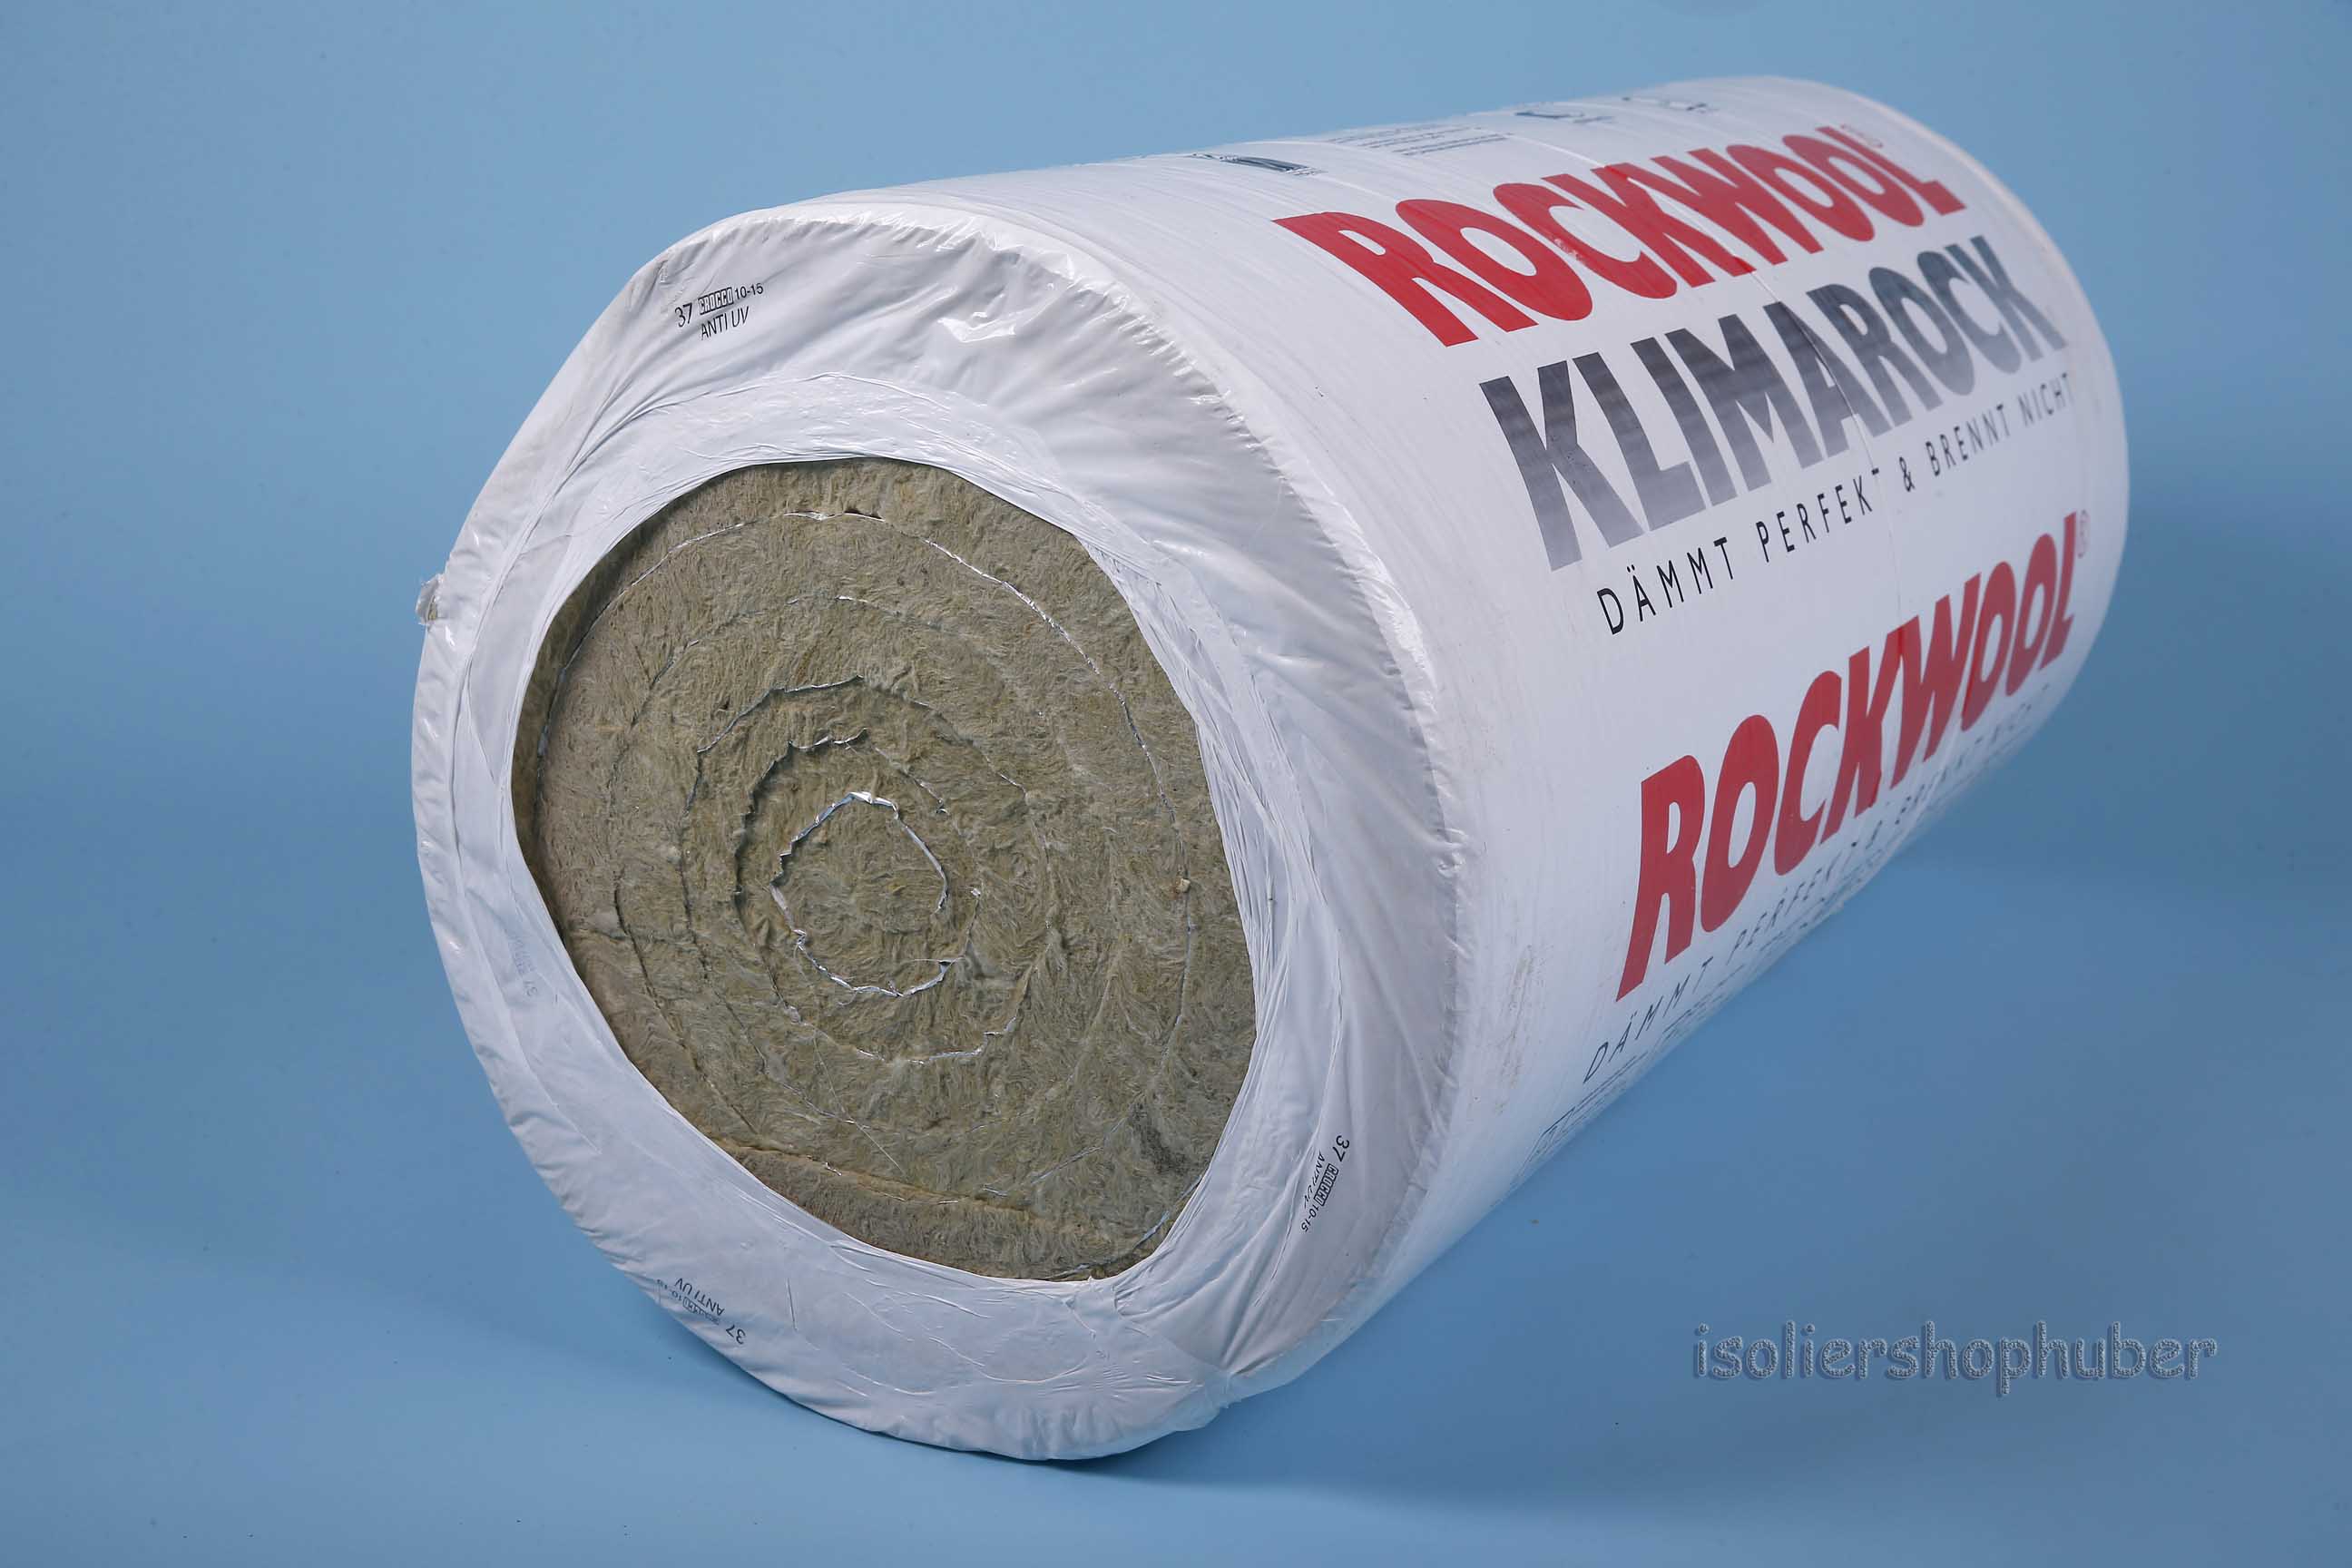 Isoliershophuber - 80 mm/2,15 m² Rockwool Klimarock Steinwolle  Lamellenmatte alukaschiert, Doppelballen